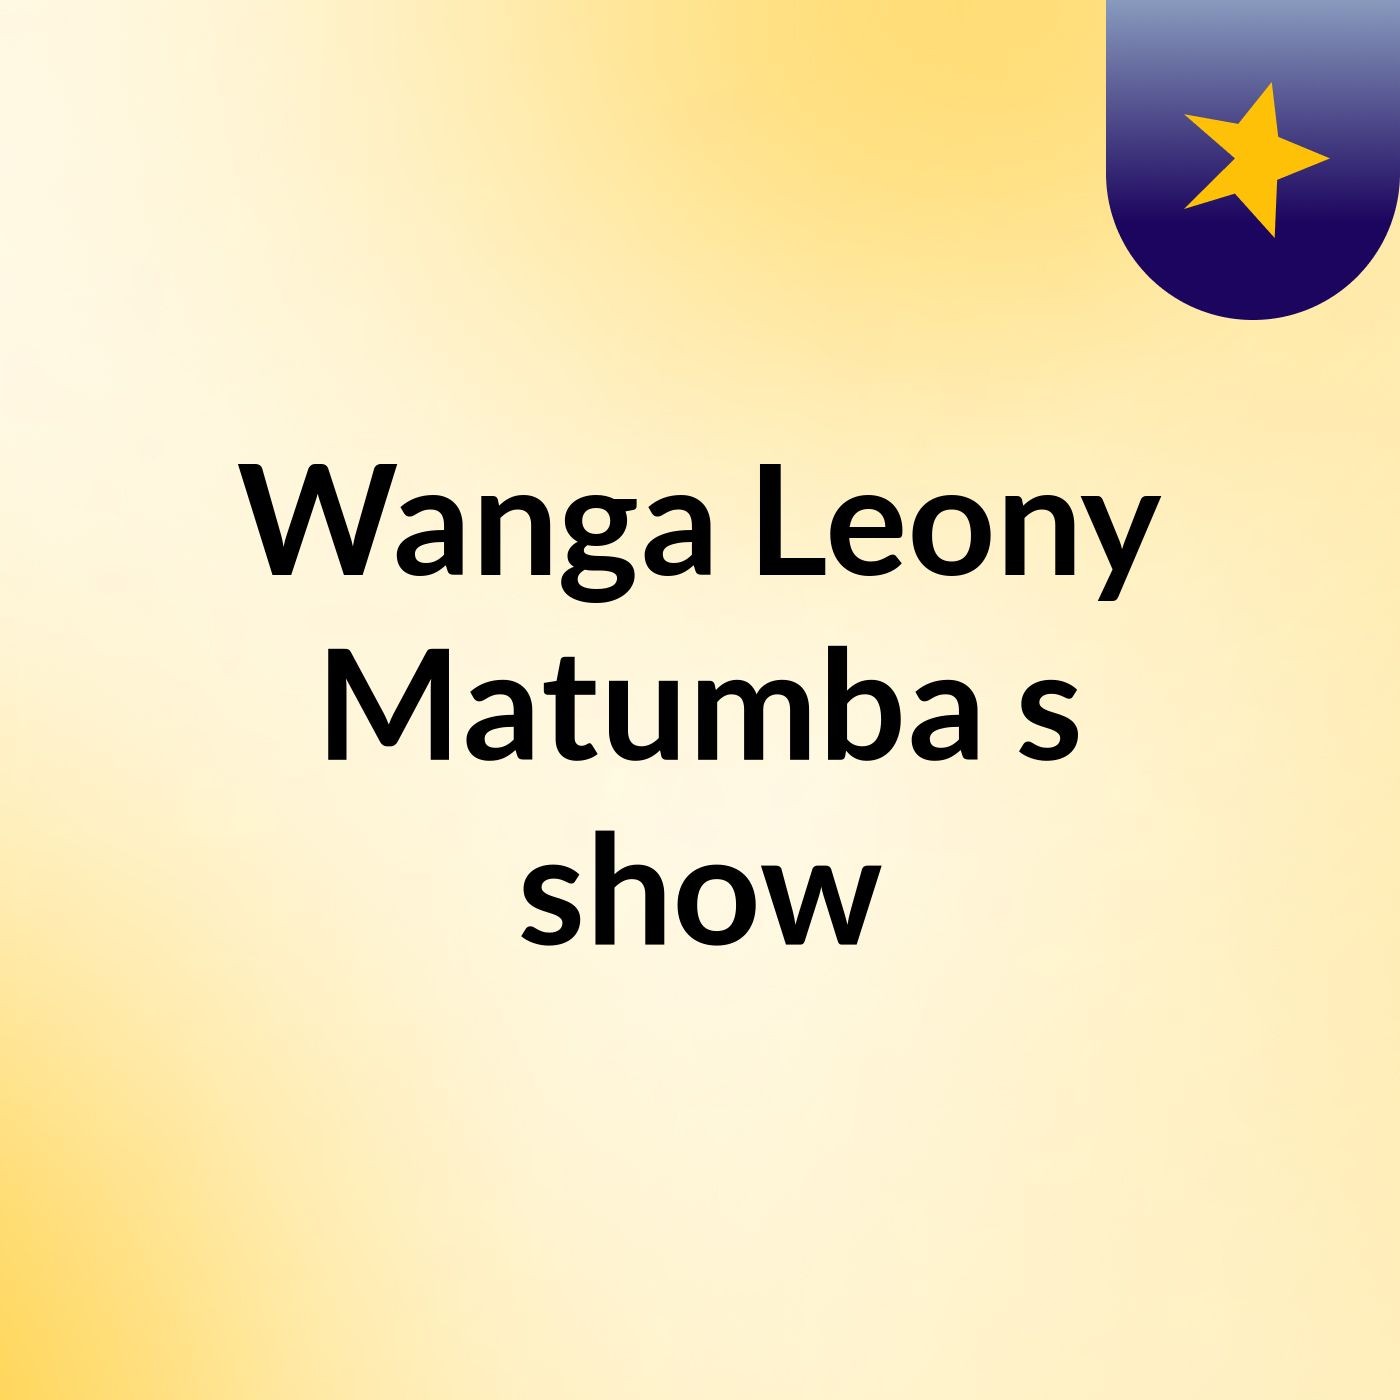 Chief Episode 8 - Wanga Leony Matumba's show